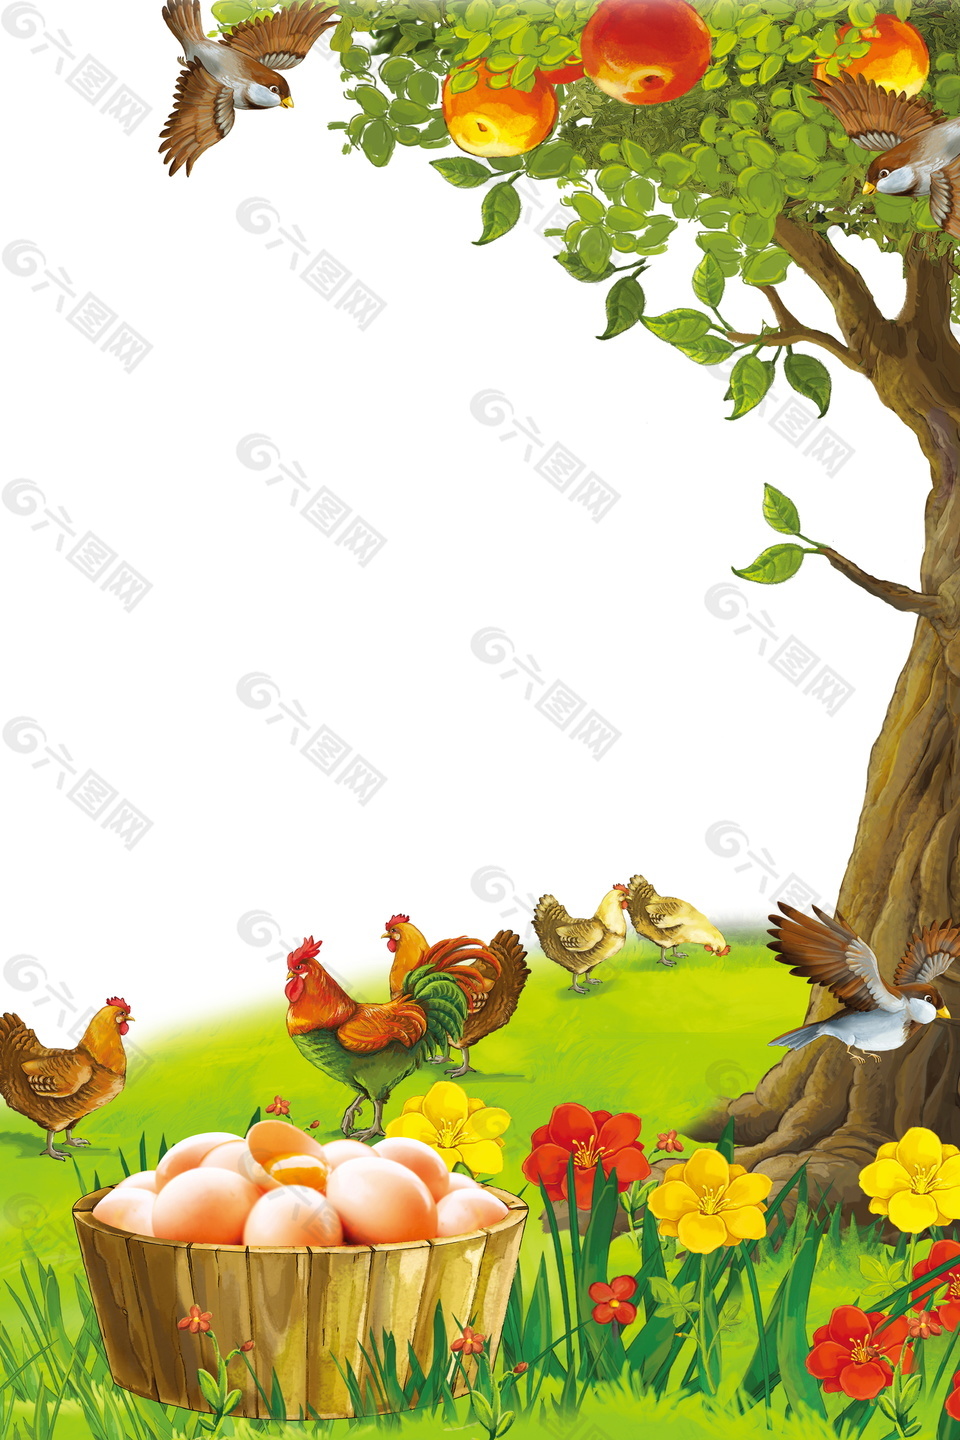 彩绘苹果树下的土鸡蛋背景素材